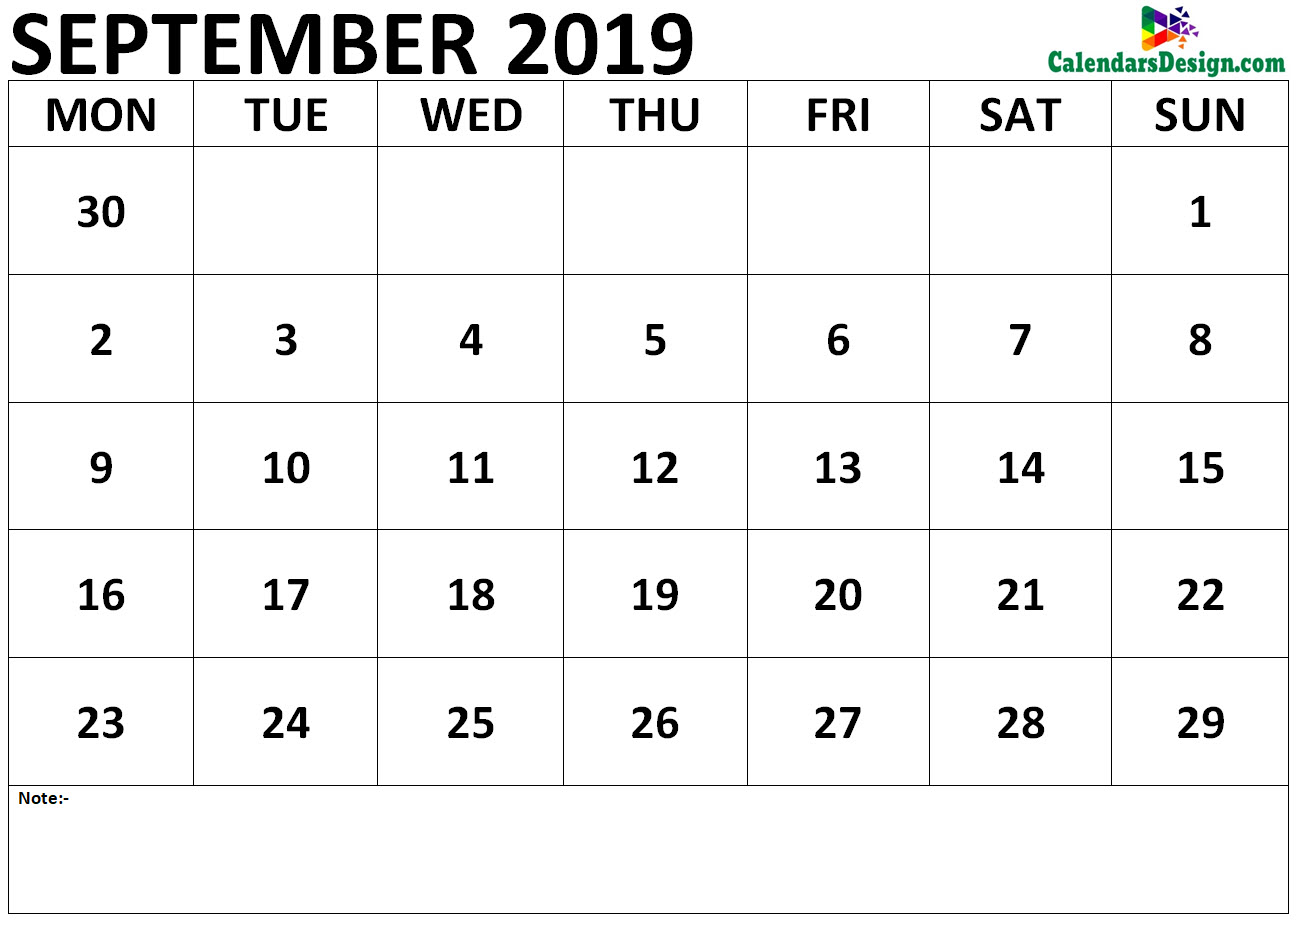 Calendar for September 2019